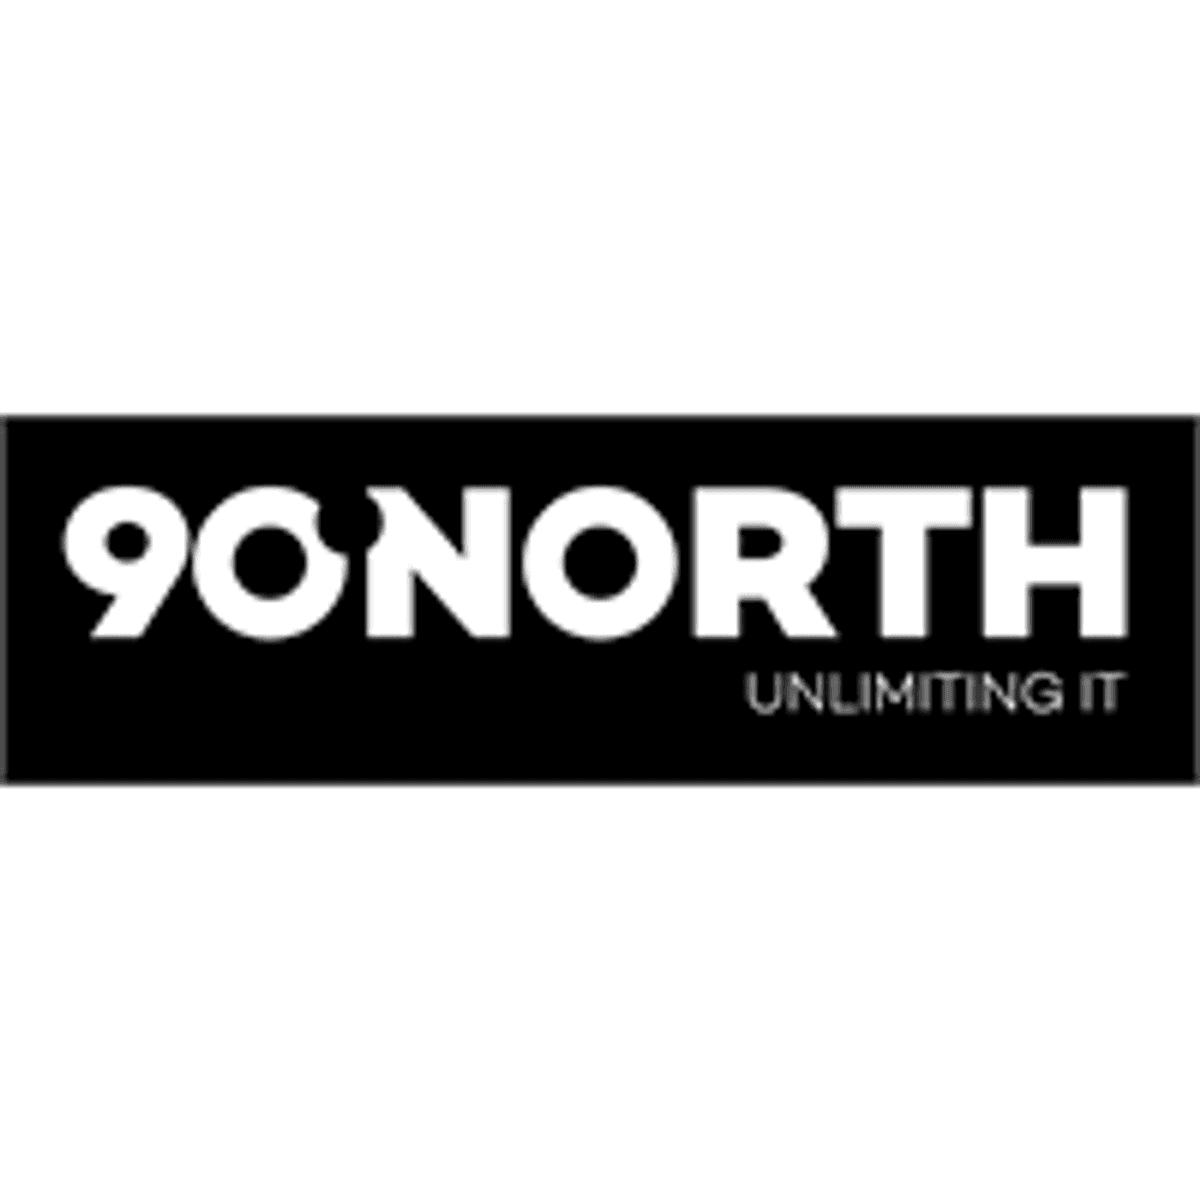 90NORTH is nieuwe naam van moederbedrijf Bauhaus ArtITech, MatrixMind en One Zero IT image